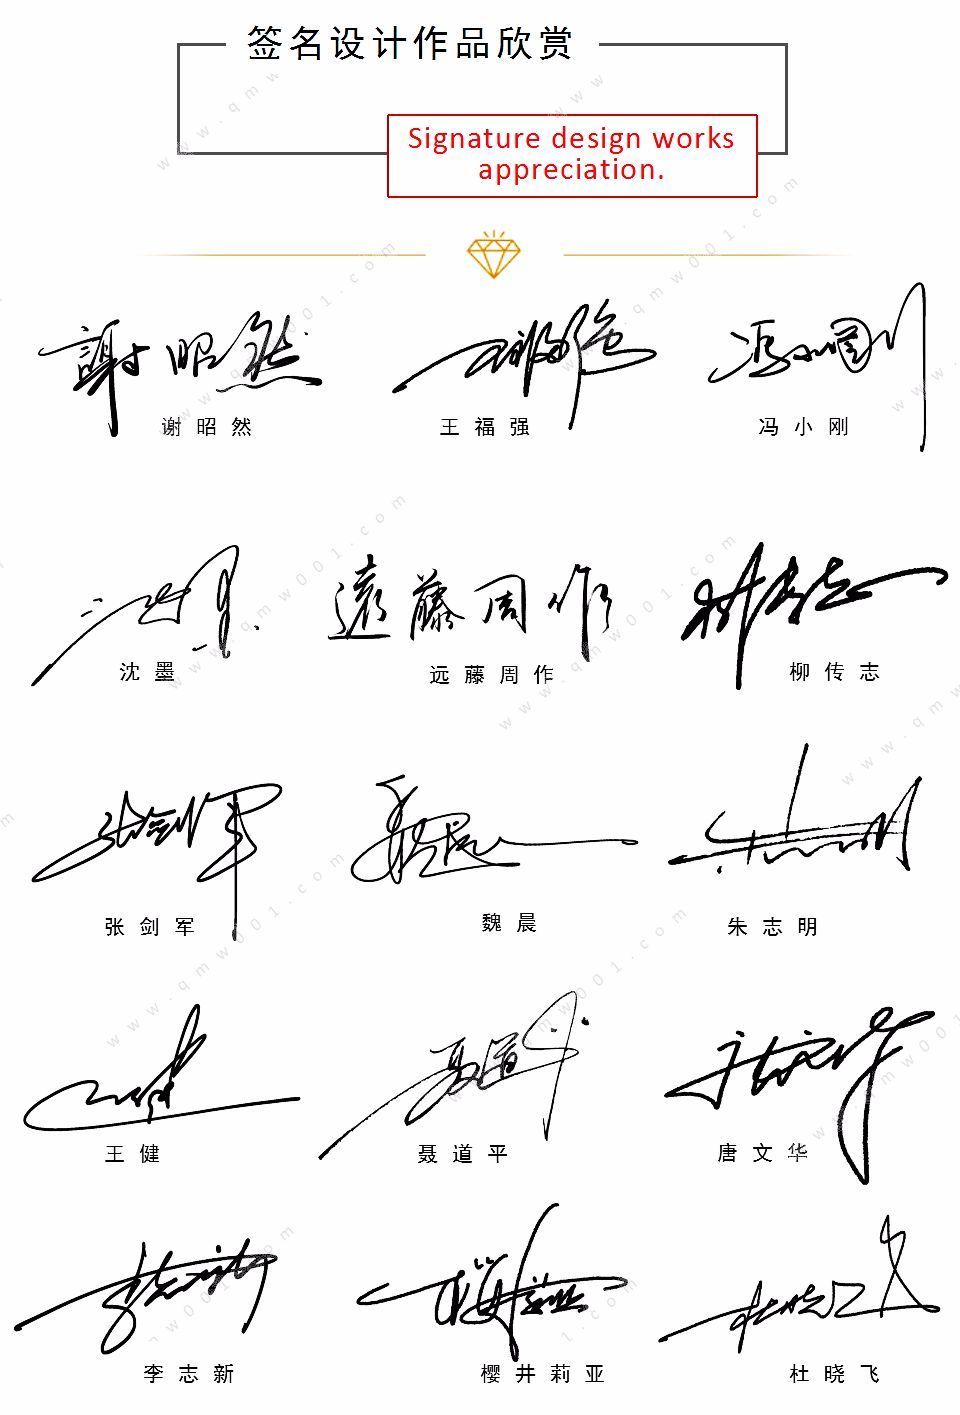 艺术签名丨签名设计丨连笔签名丨商务签名丨明星签名丨签名案例